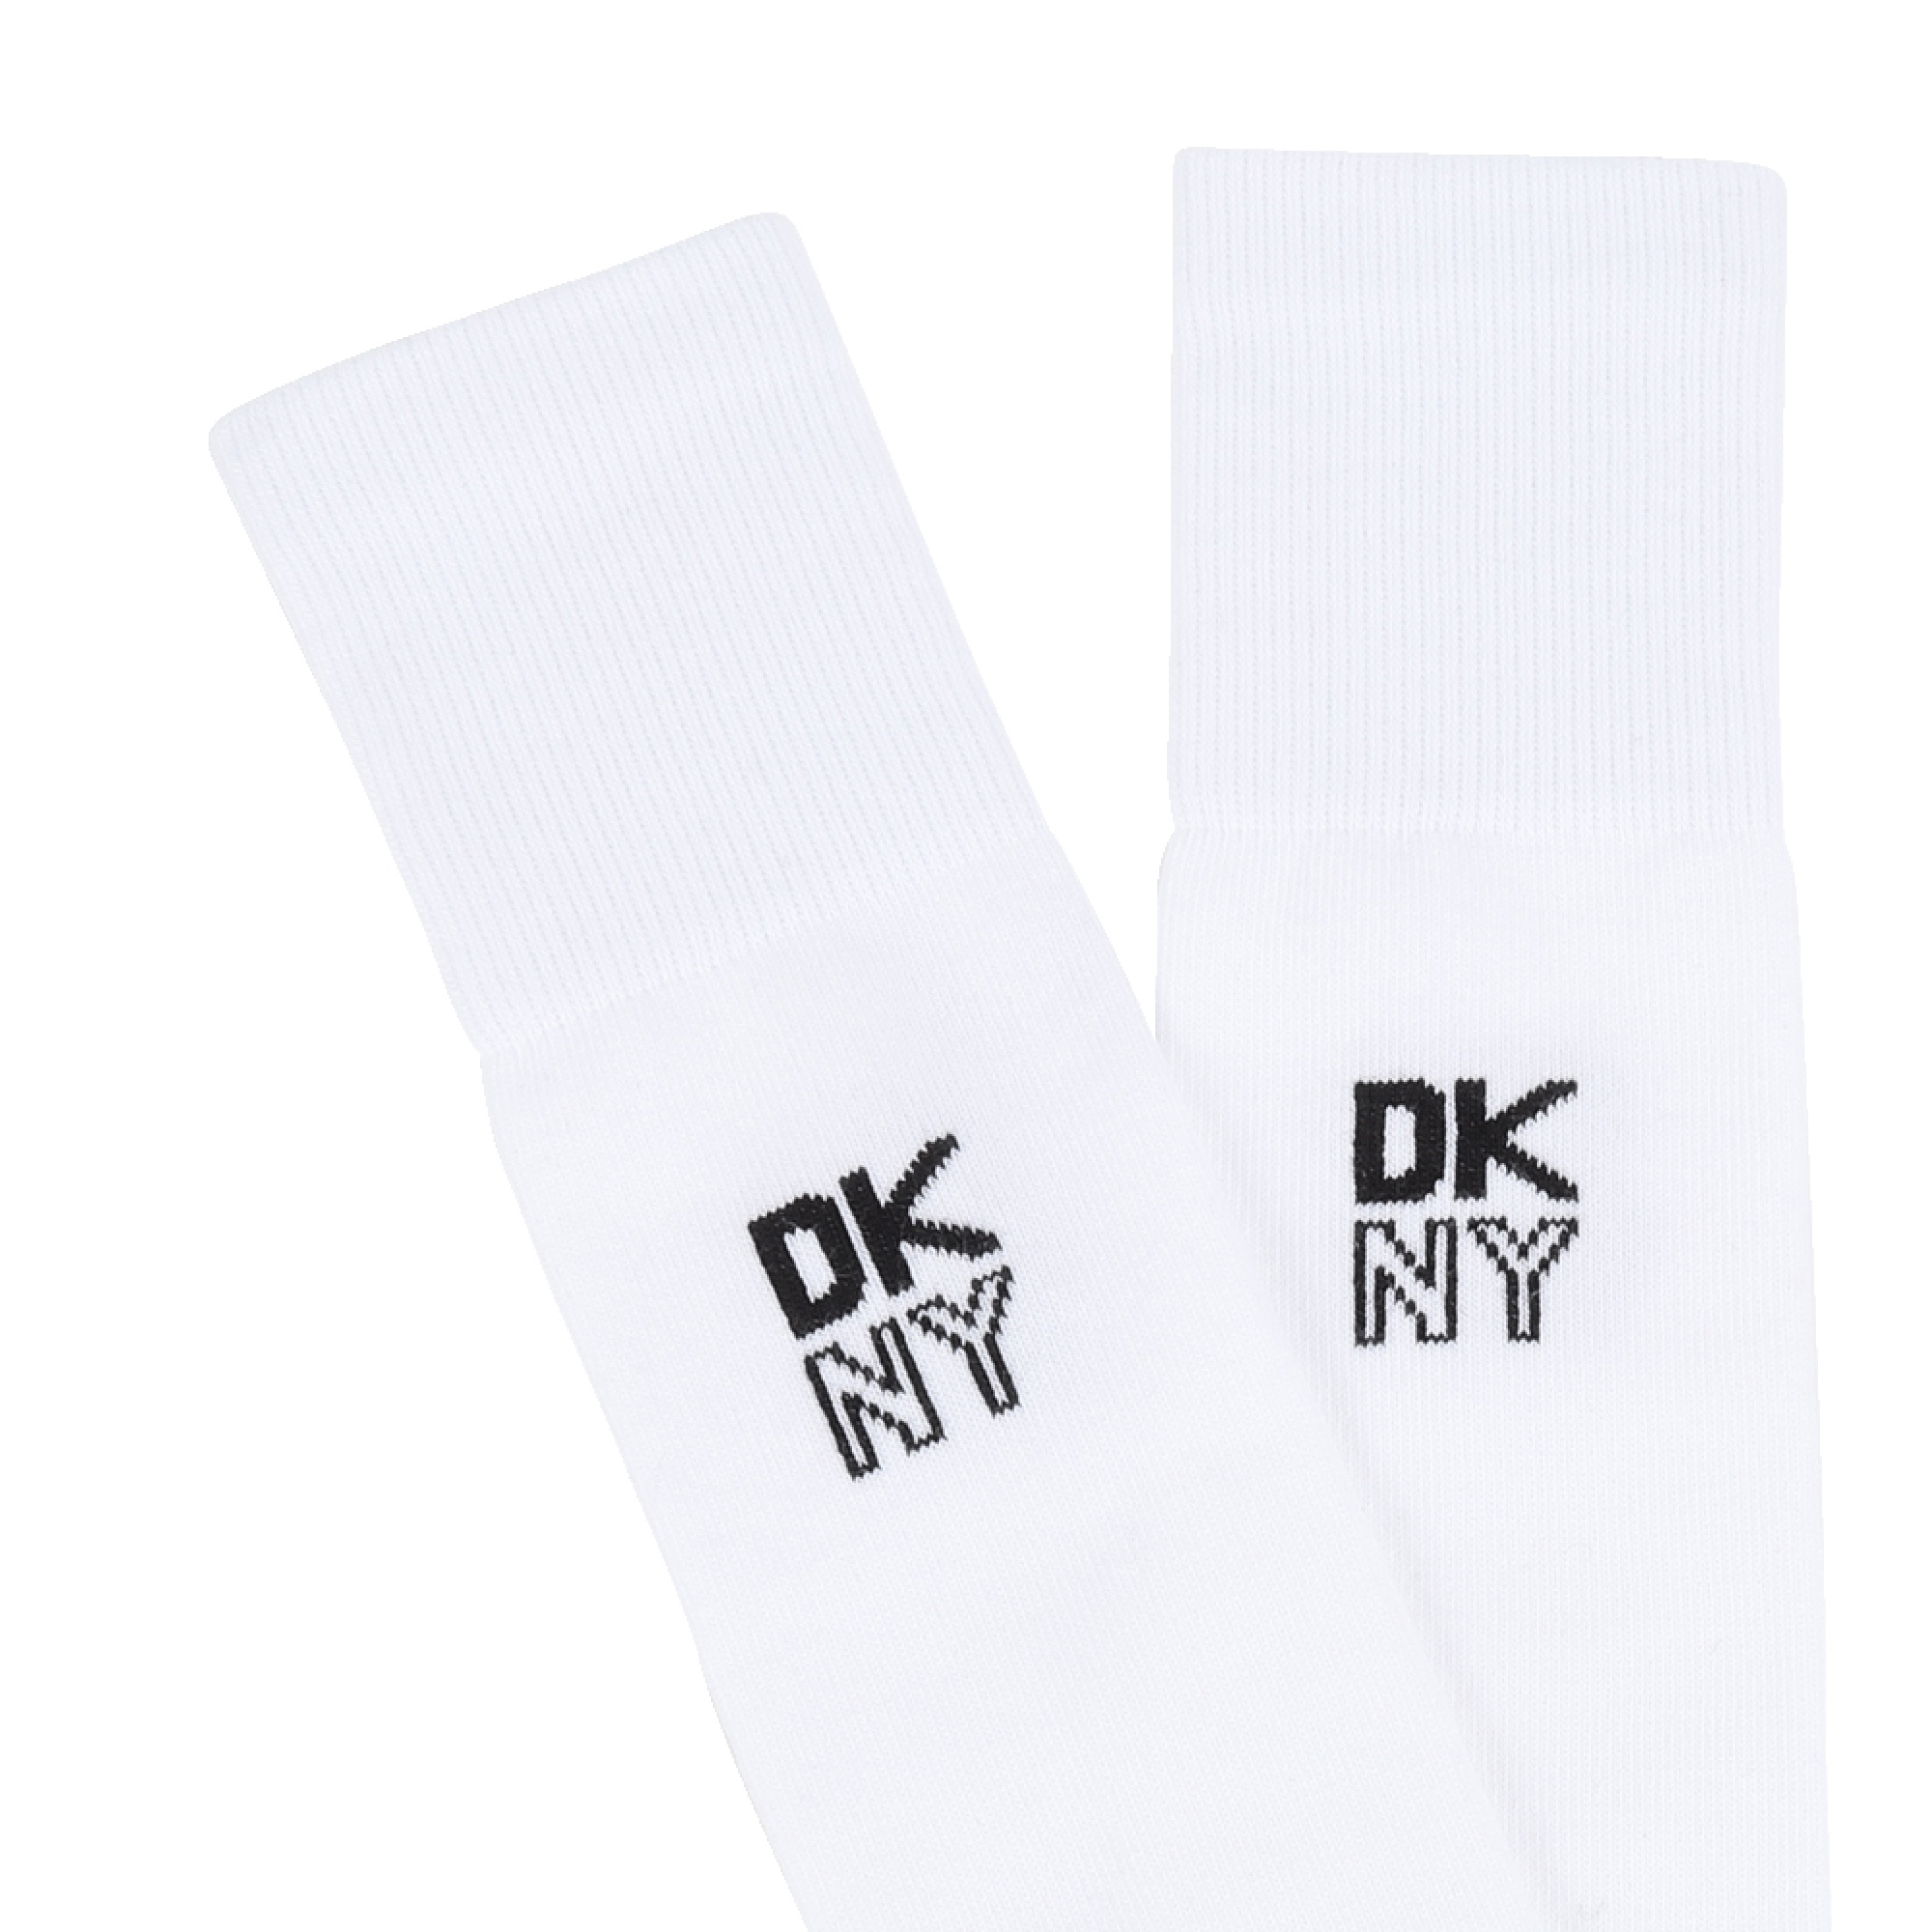 Hohe Socken mit Logo DKNY Für MÄDCHEN